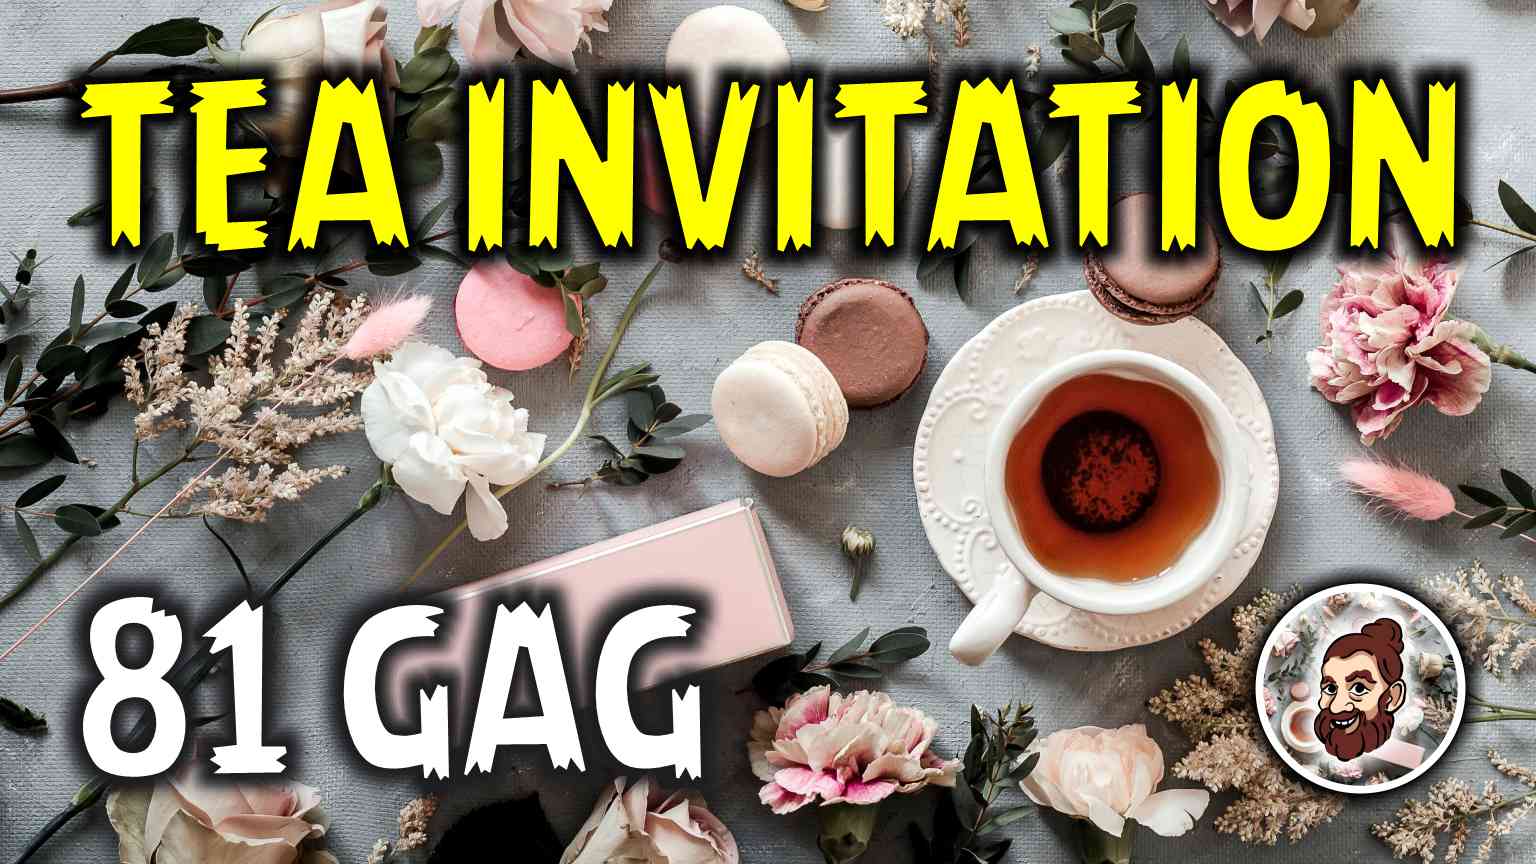 Tea invitation